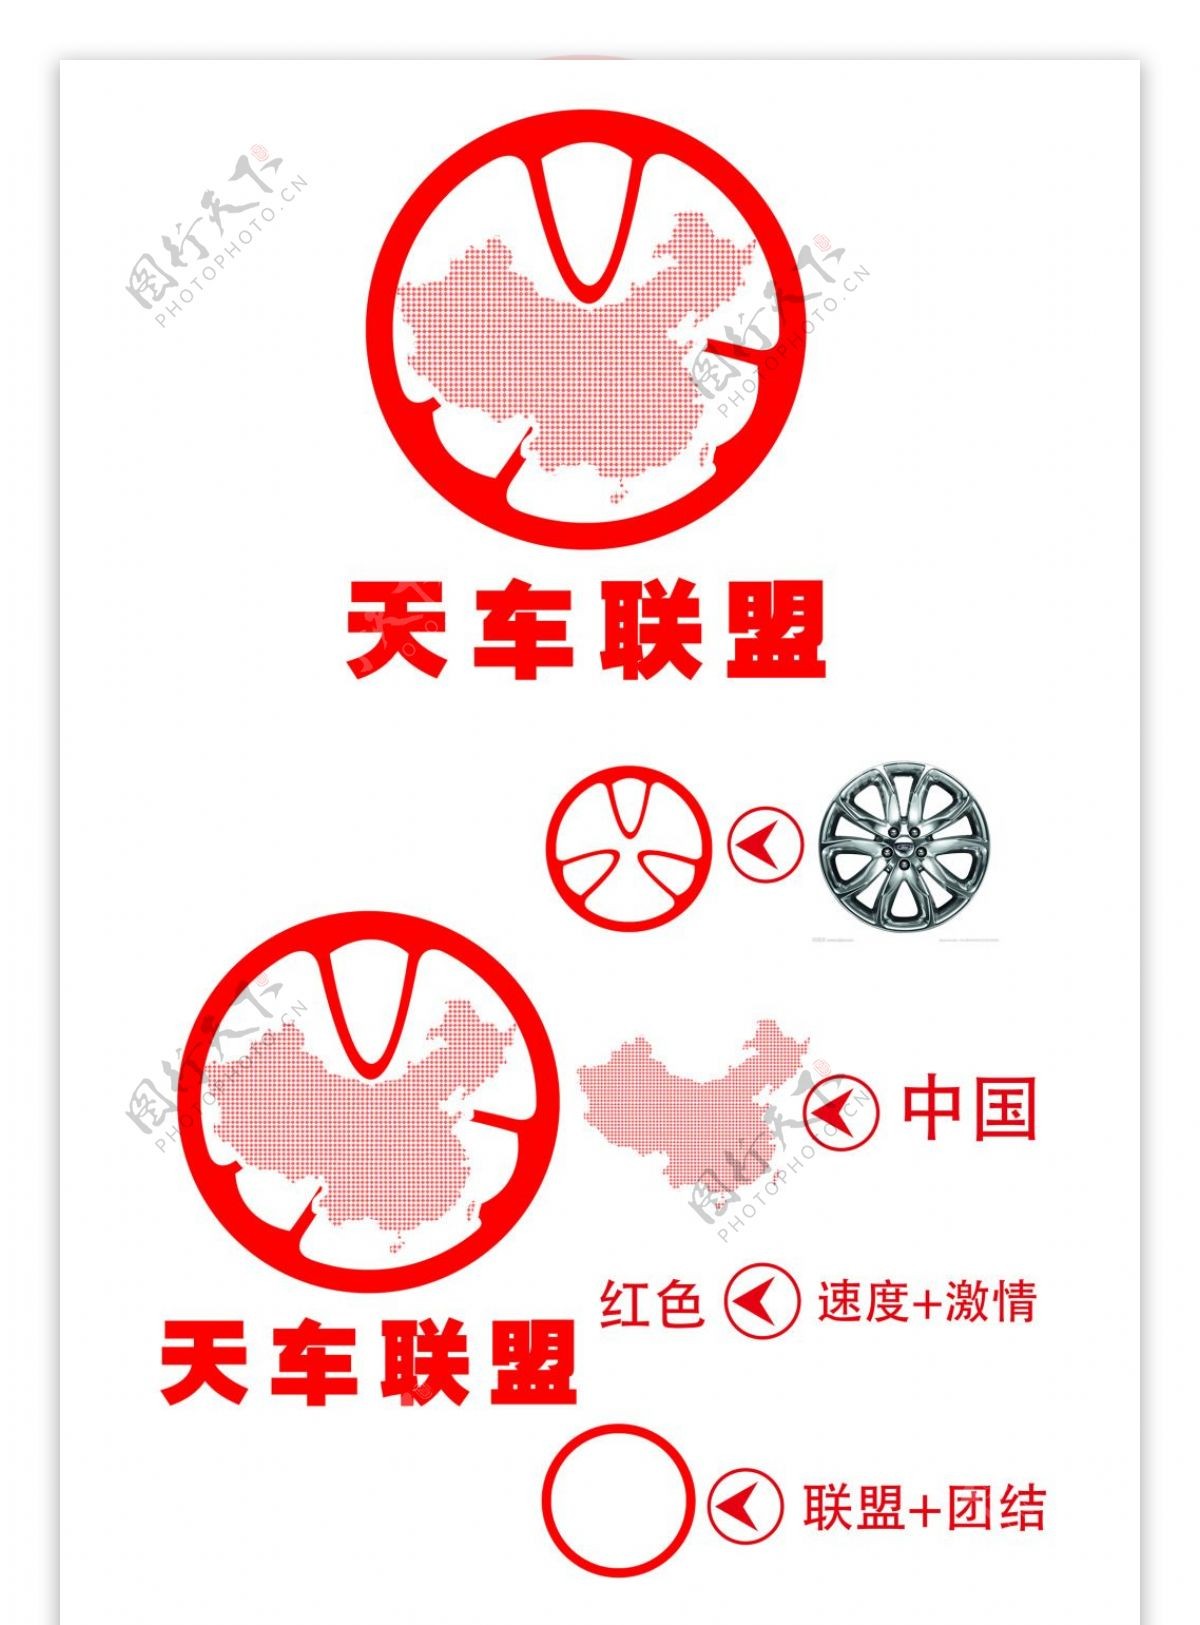 天车联盟logo设计标志设计及简单应用